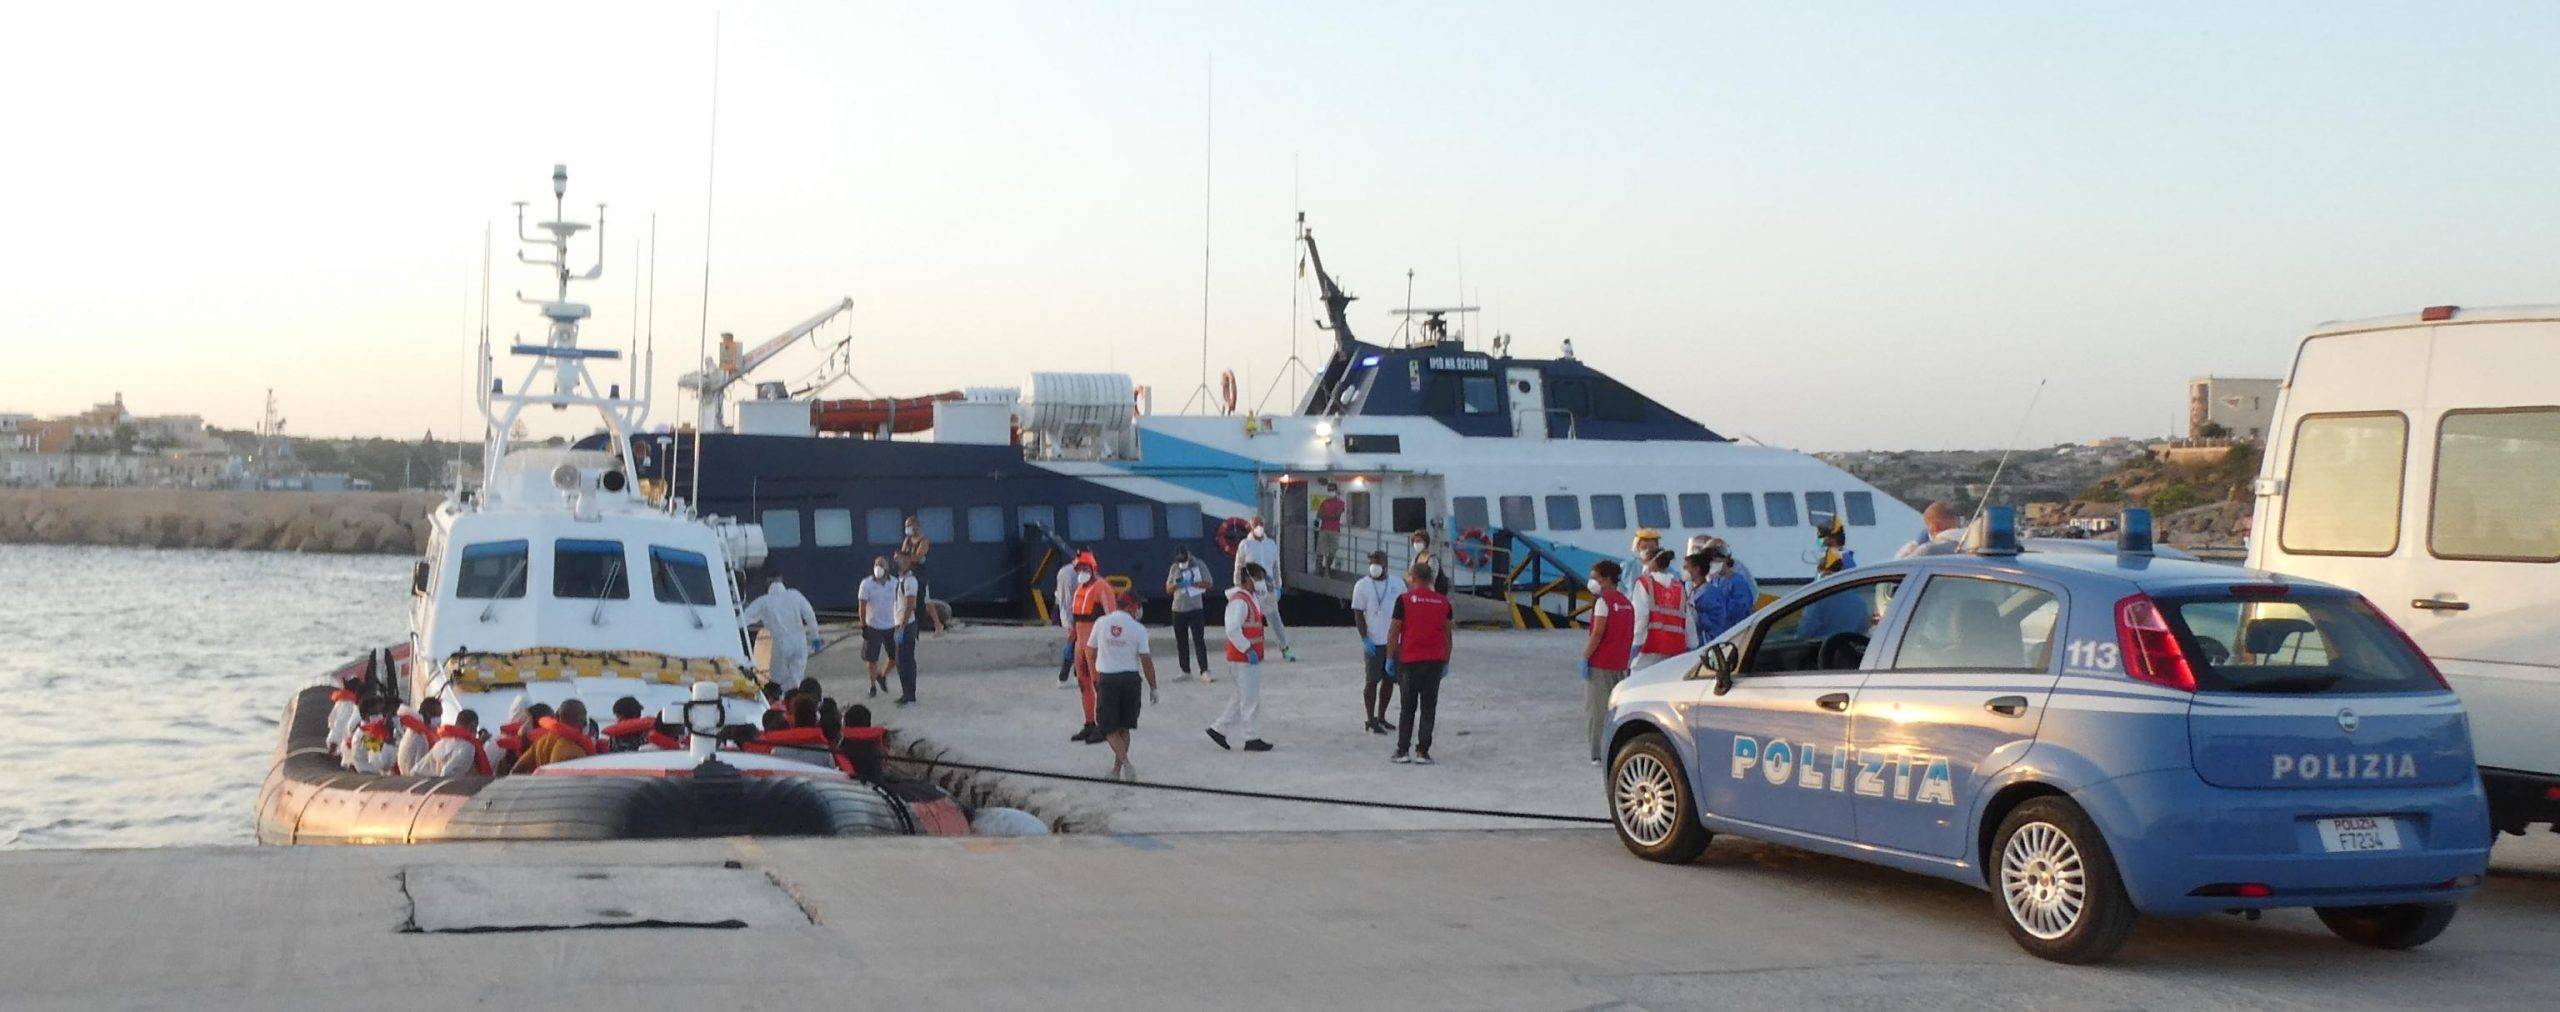 Migranti, decimo approdo oggi a Lampedusa: altri 65